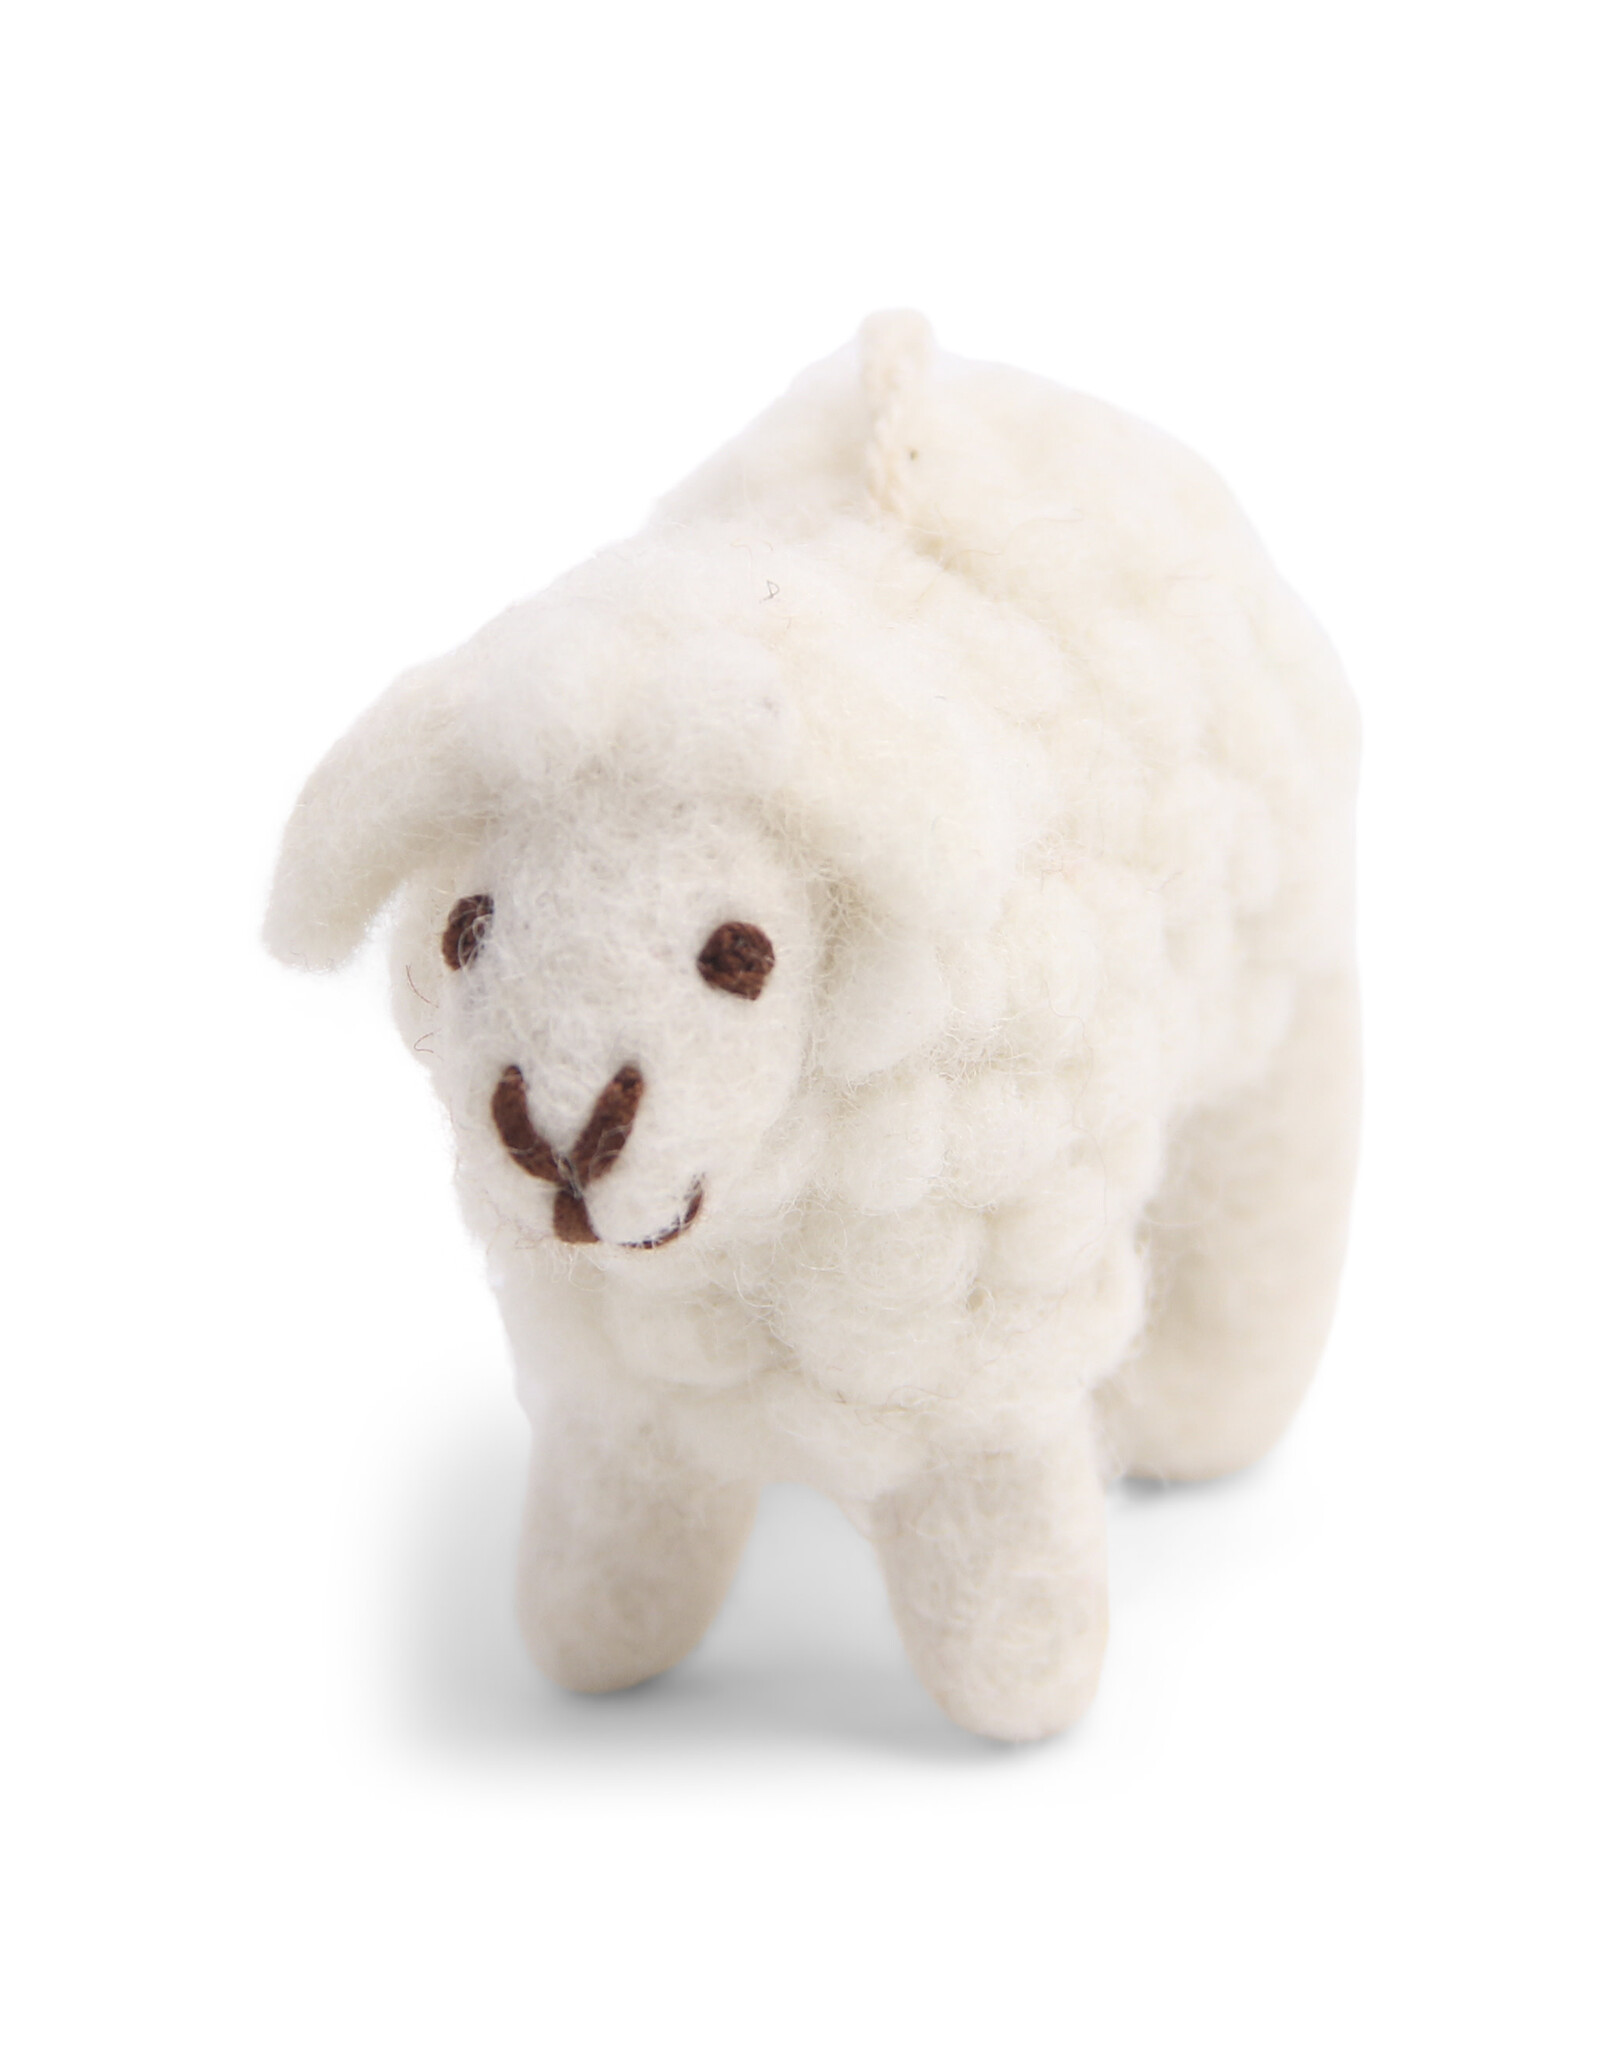 Felt Sheep Ornament (White)